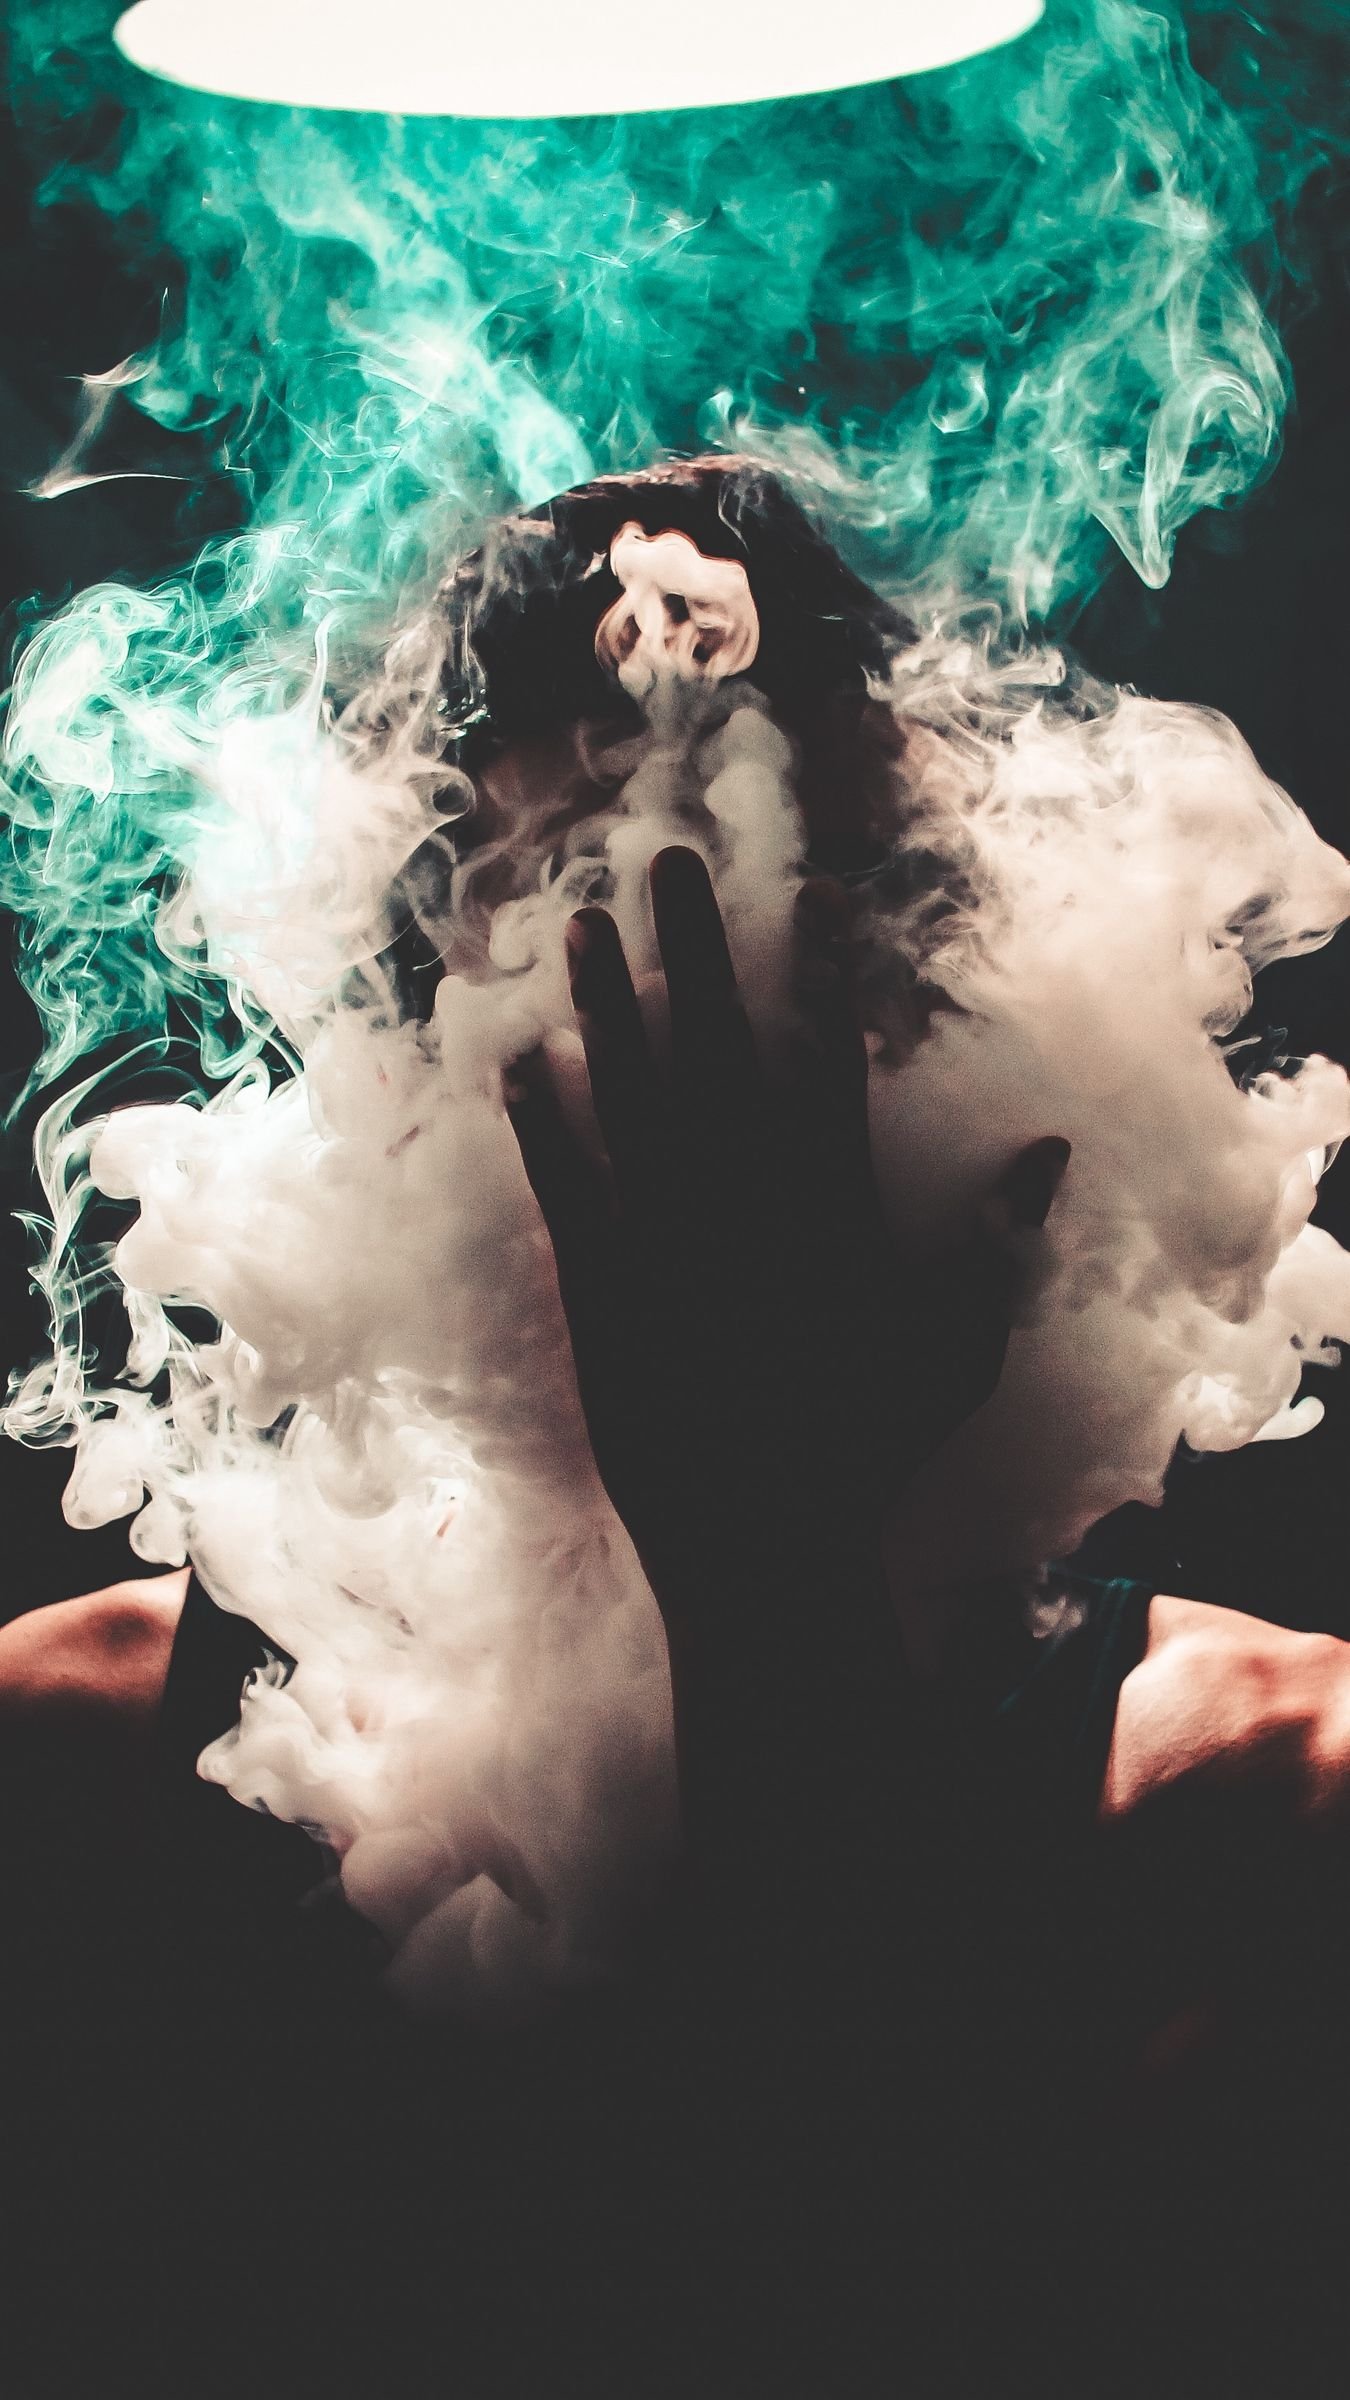 smoke tumblr backgrounds